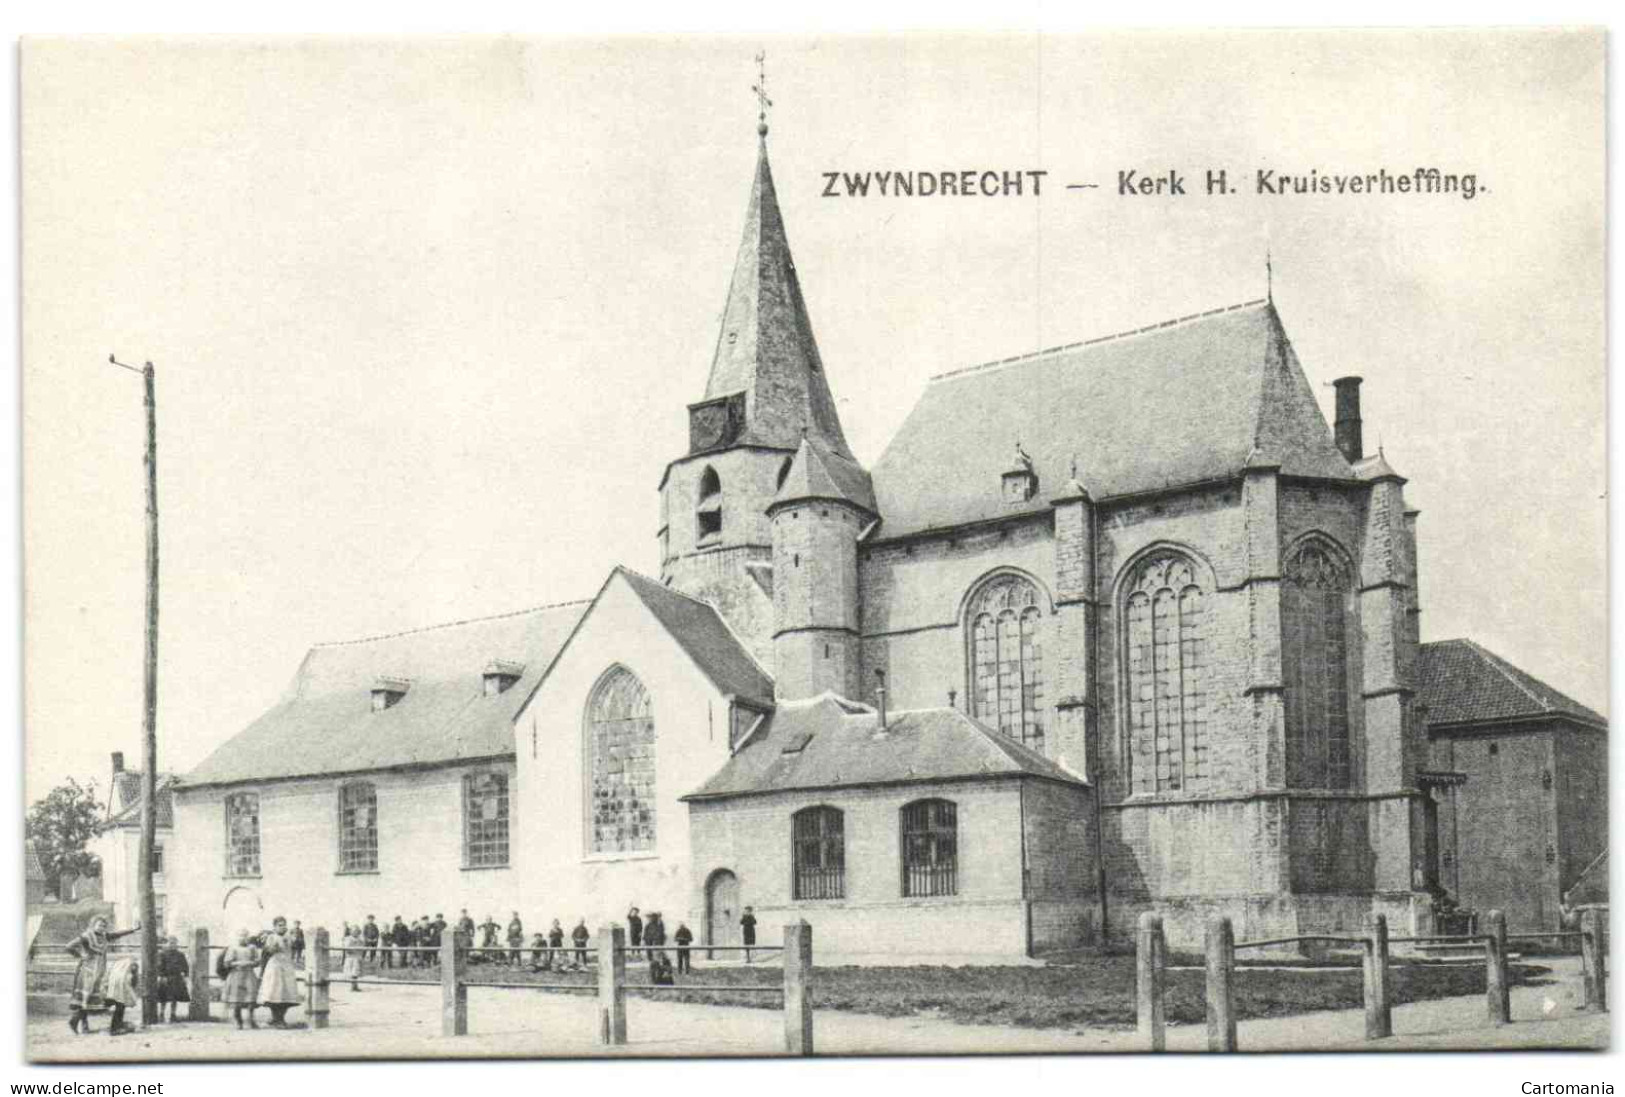 Zwyndrecht - Kerk H. Kruisverheffing - Zwijndrecht